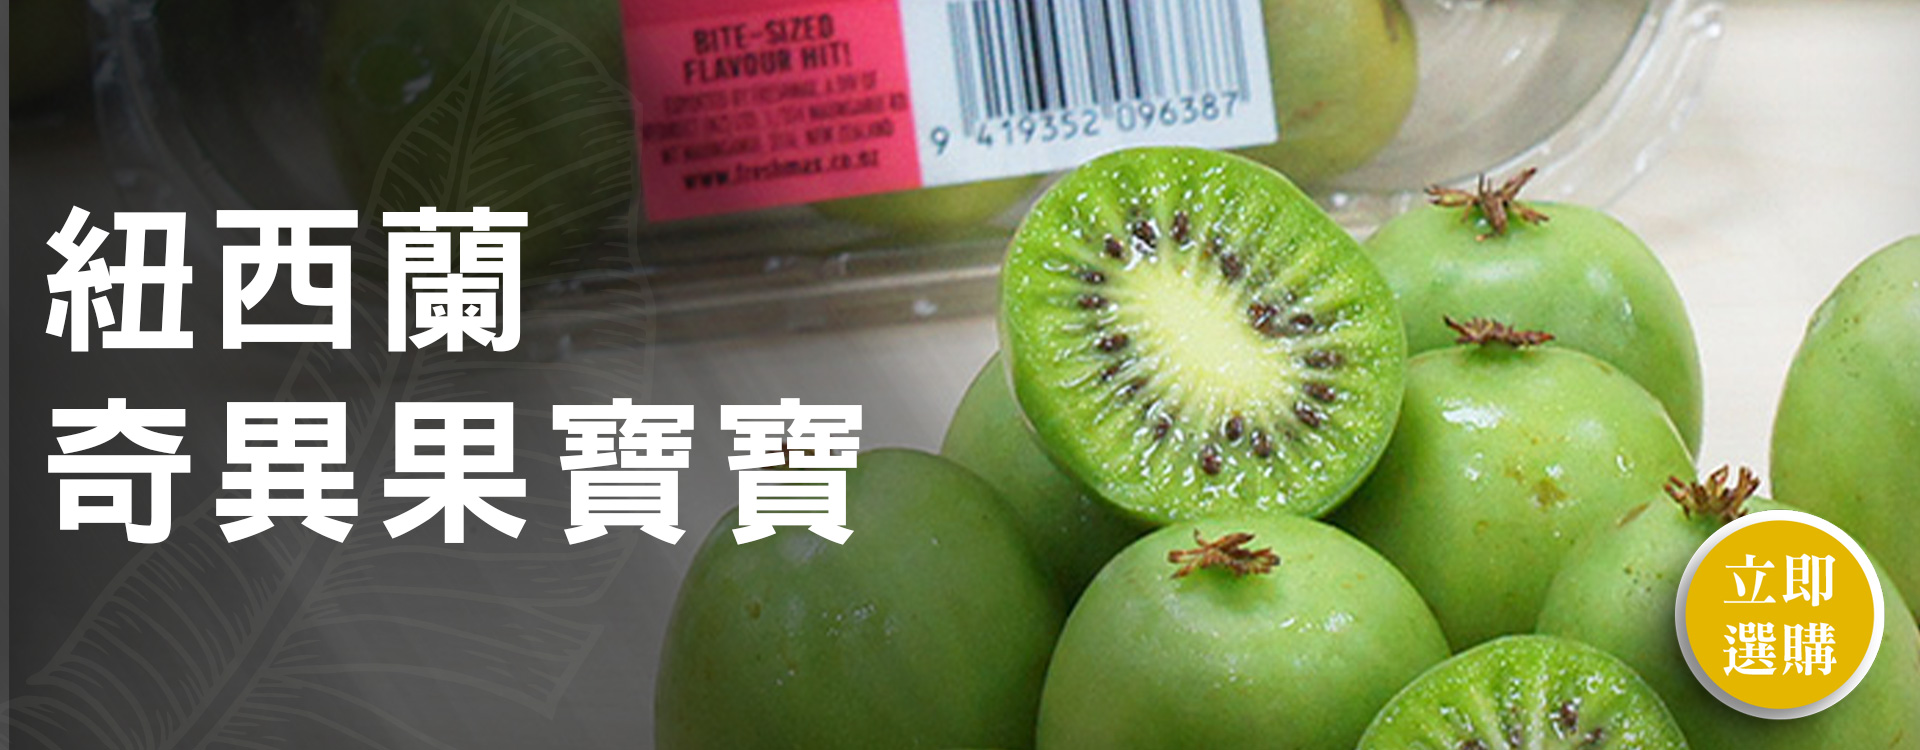 奇異果寶寶-臺灣50年水果蔬果專家 | 優質蔬果、水果禮盒、當季水果推薦